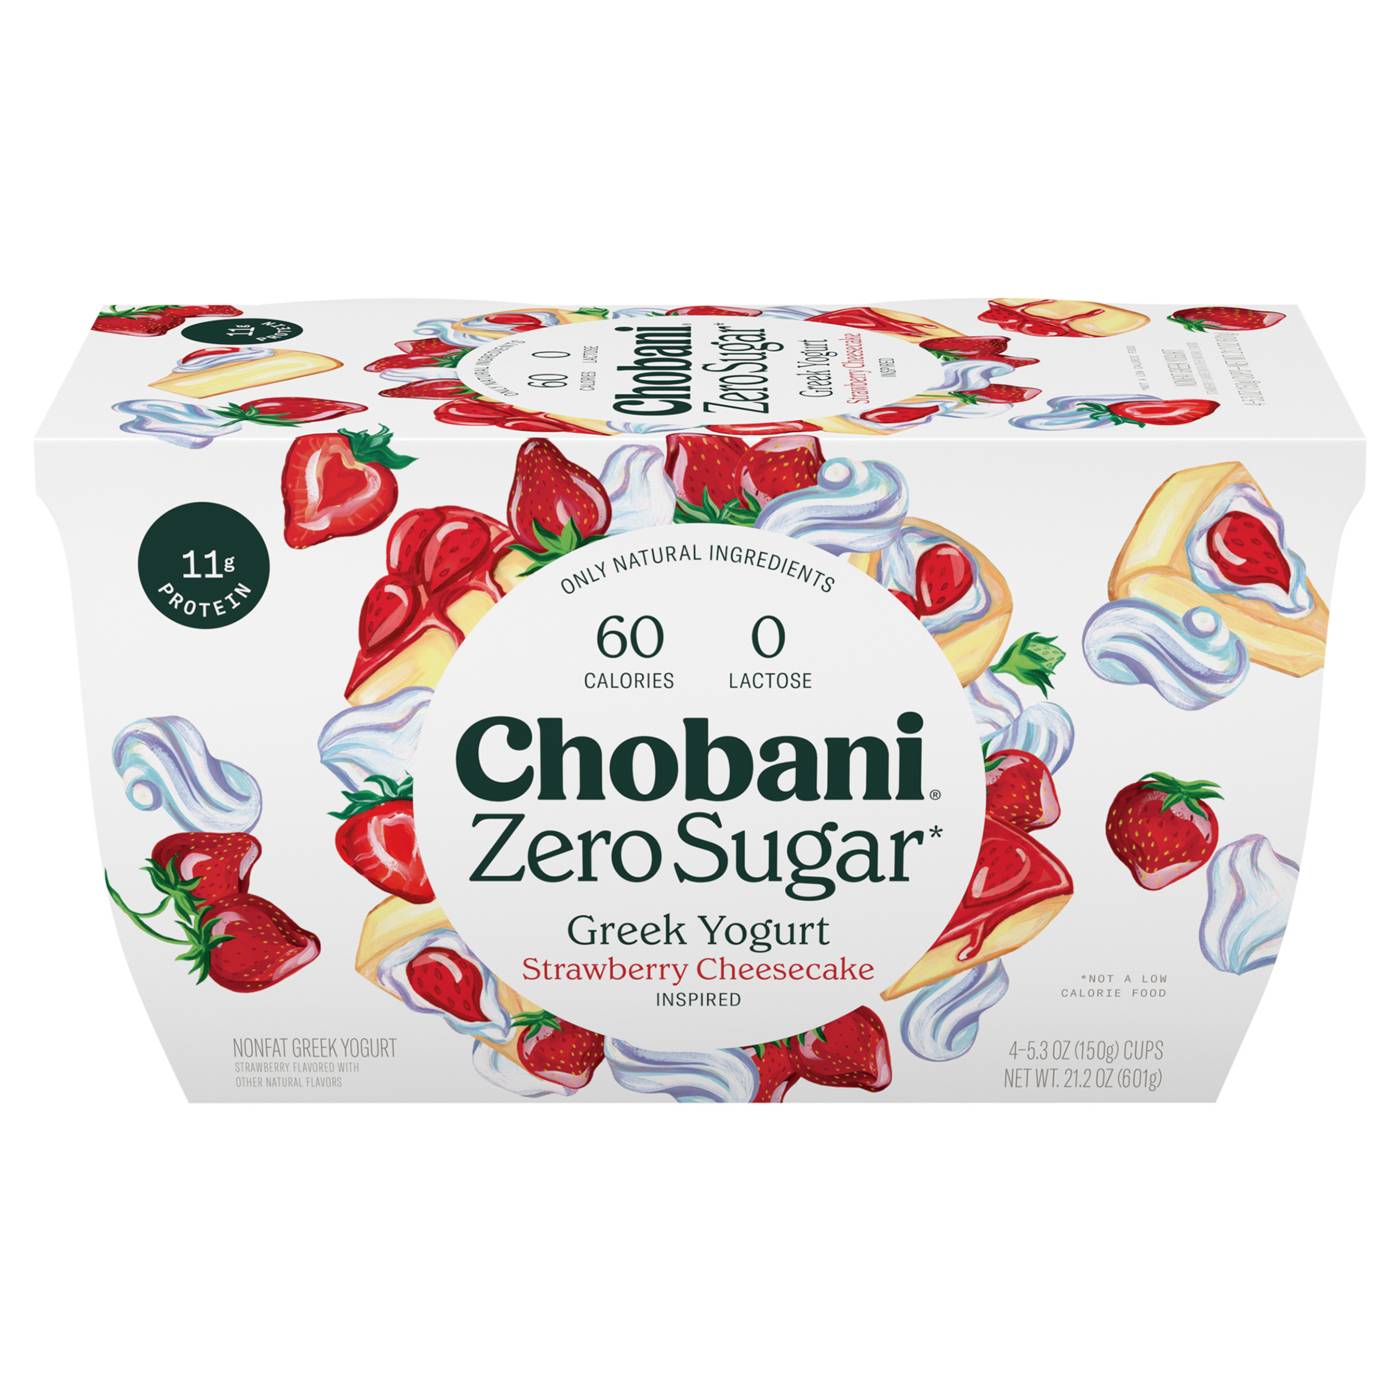 Chobani Zero Sugar Strawberry Cheesecake Greek Yogurt; image 1 of 5